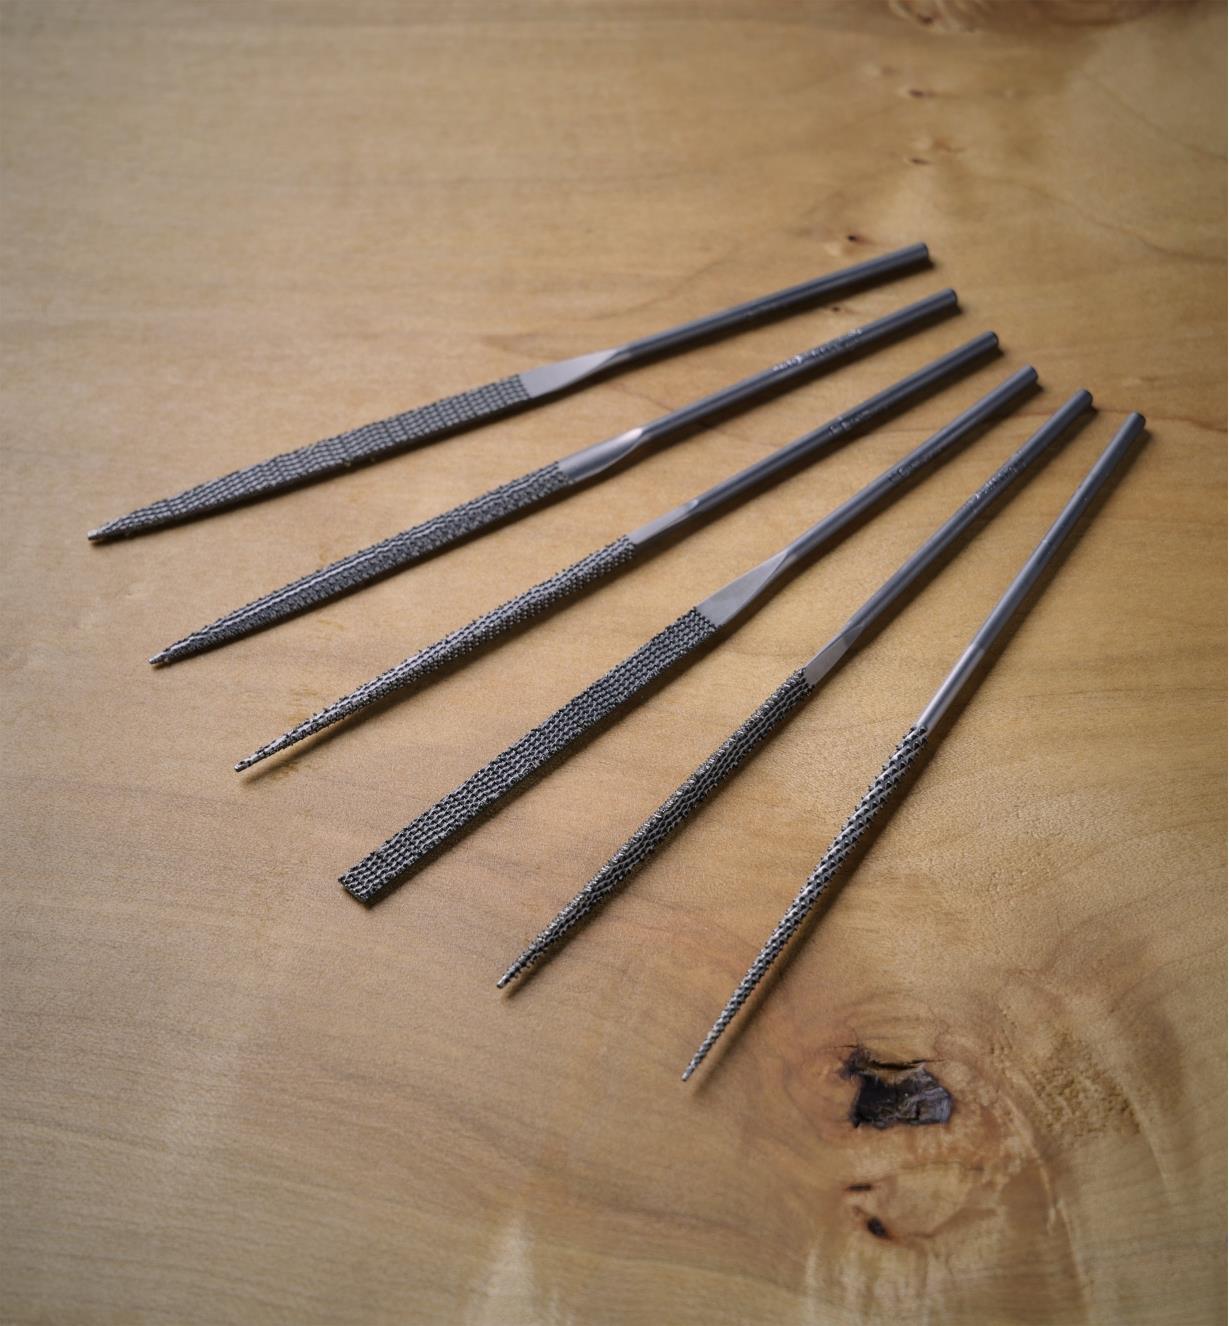 51W0201 - Italian Needle Rasps